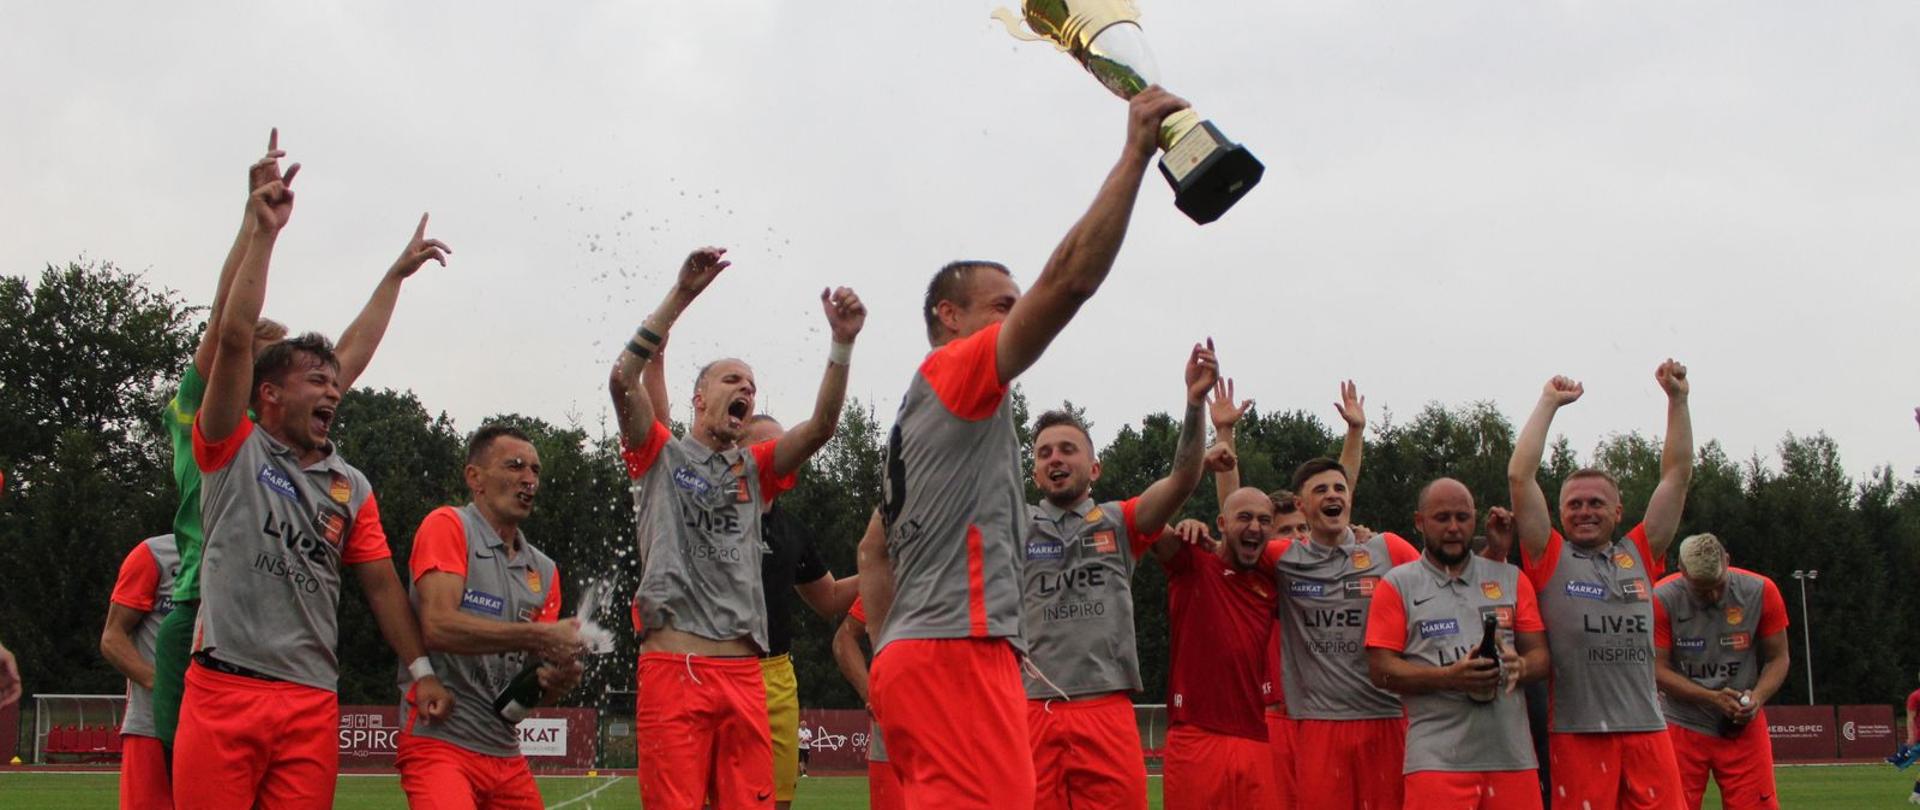 Zespół MKS Kalwarianka świętujący awans do IV ligi, grupa mężczyzn w strojach piłkarskich na pierwszym planie kapitan z pucharem. 